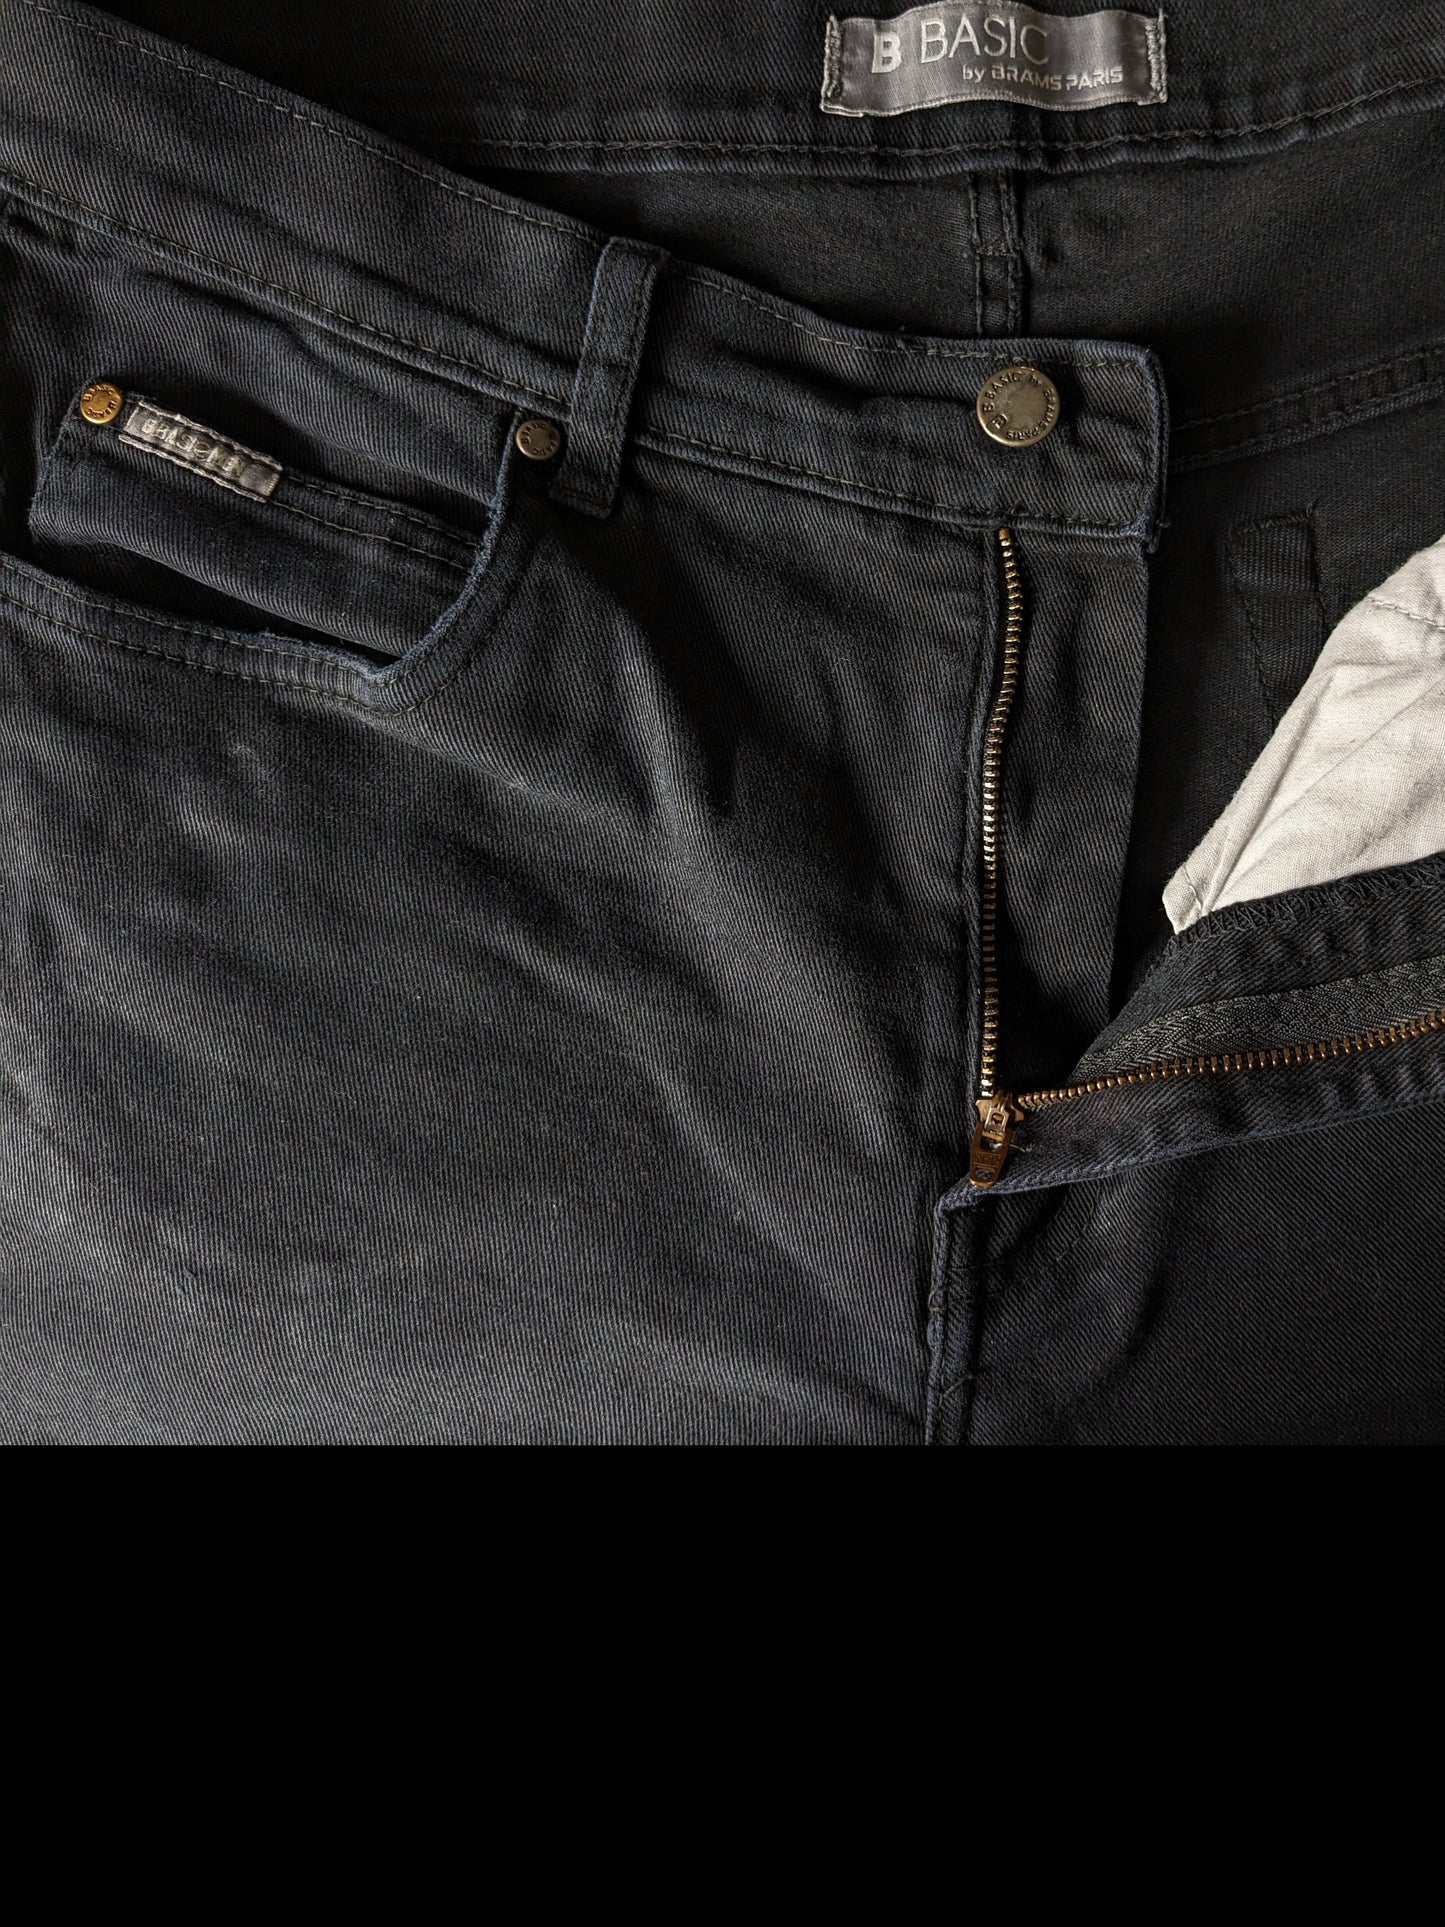 B Basique par Brams Paris Jeans. Couleur noire. Taille W34 - L34. Fit de confort. extensible.